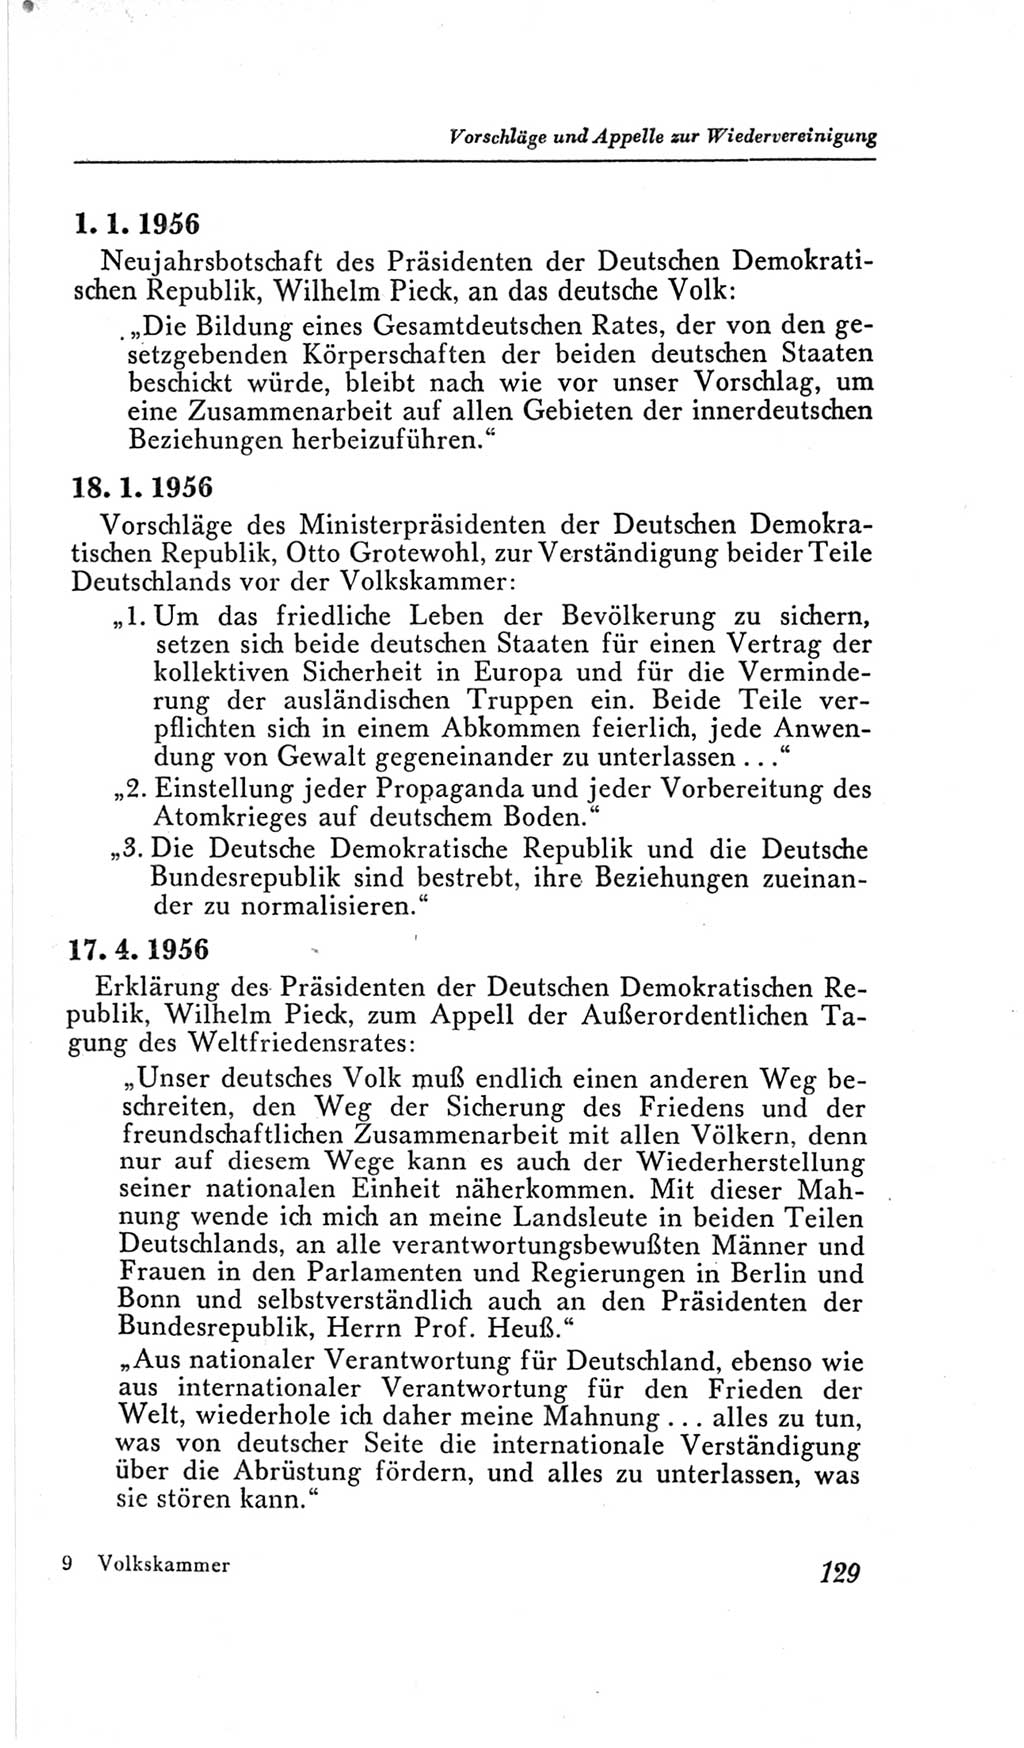 Handbuch der Volkskammer (VK) der Deutschen Demokratischen Republik (DDR), 2. Wahlperiode 1954-1958, Seite 129 (Hdb. VK. DDR, 2. WP. 1954-1958, S. 129)